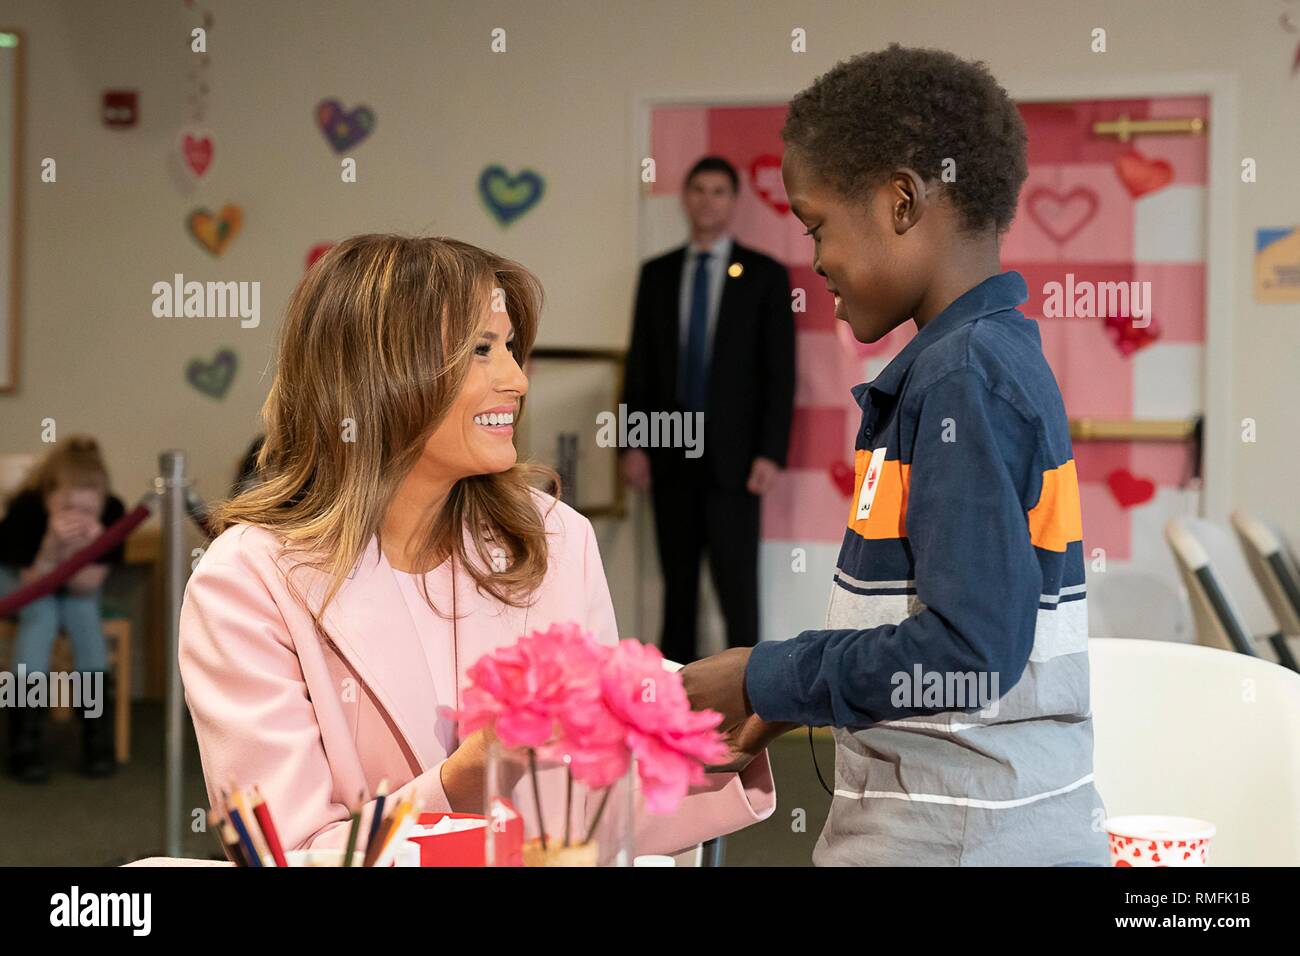 Us-First Lady Melania Trump visits Kinder, bei denen experimentelle medizinische Behandlung in Valentinstag Festlichkeiten am Inn am Nationalen Institut für Gesundheit Februar 14, 2019 in Bethesda, Maryland. Stockfoto